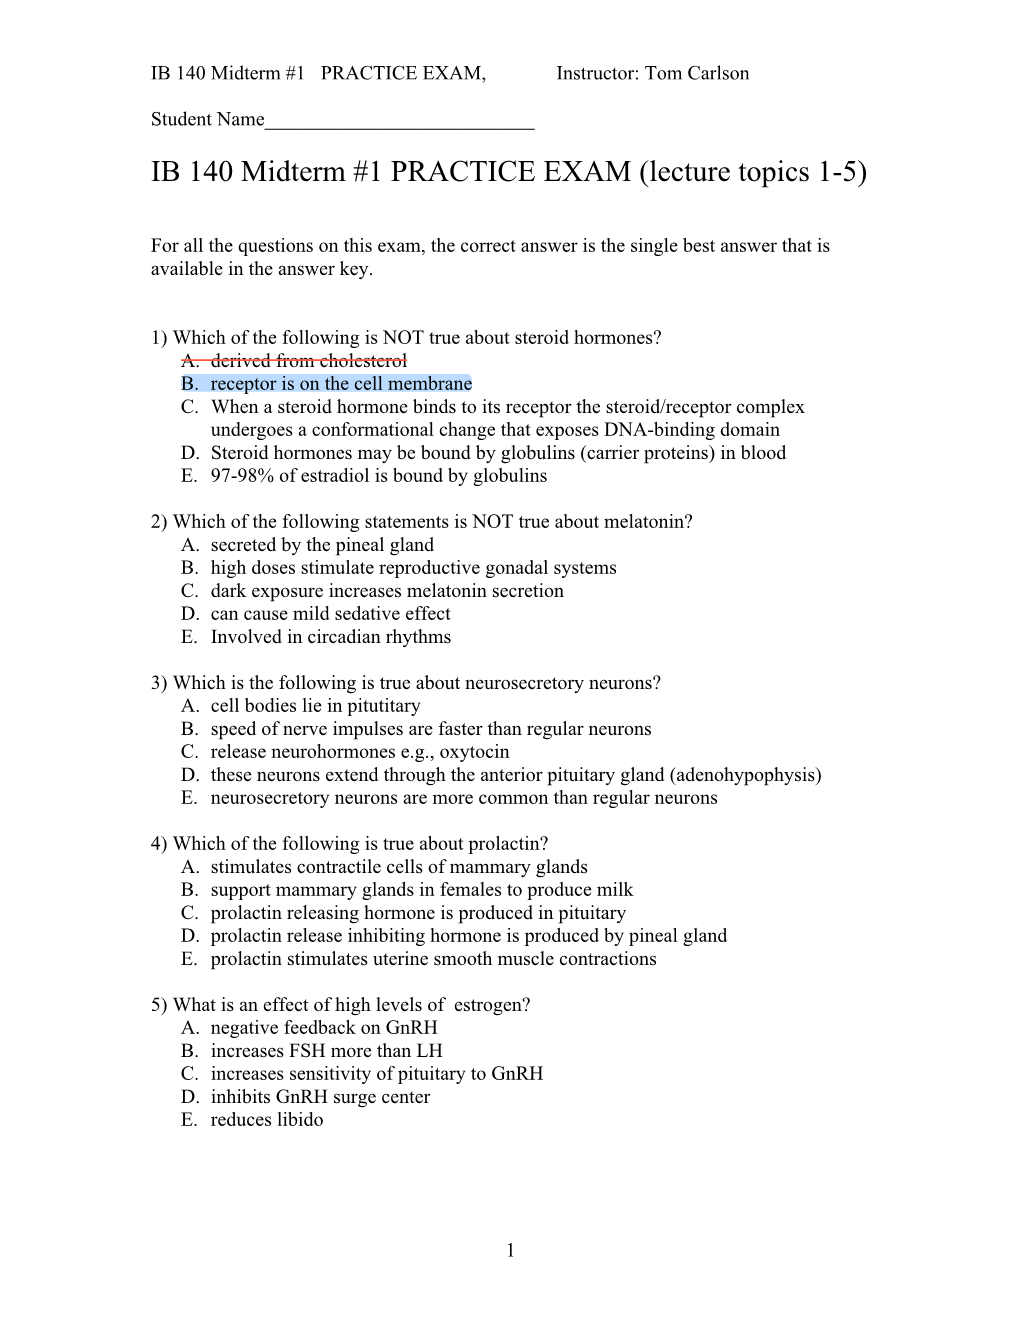 IB 140 MT#1 Prac Exam 10